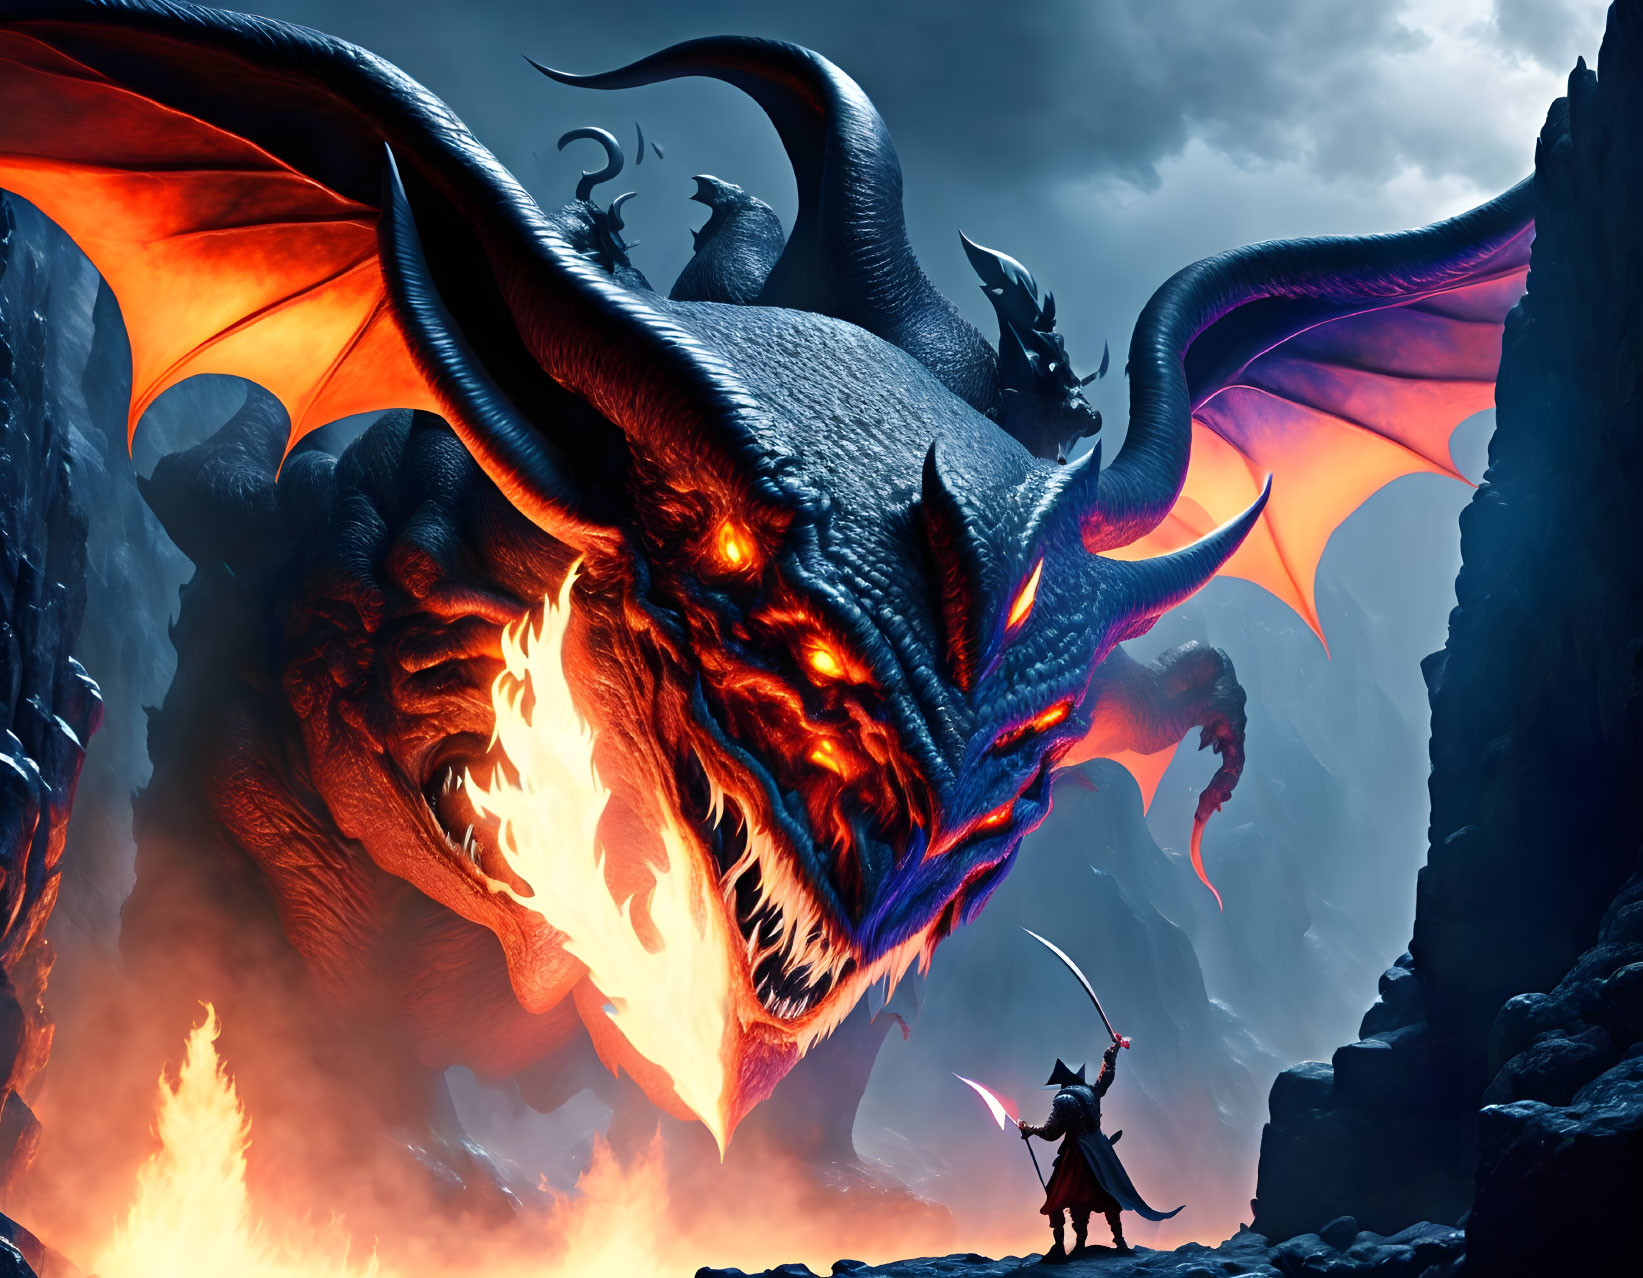 Warrior confronts giant dragon in dark rocky landscape